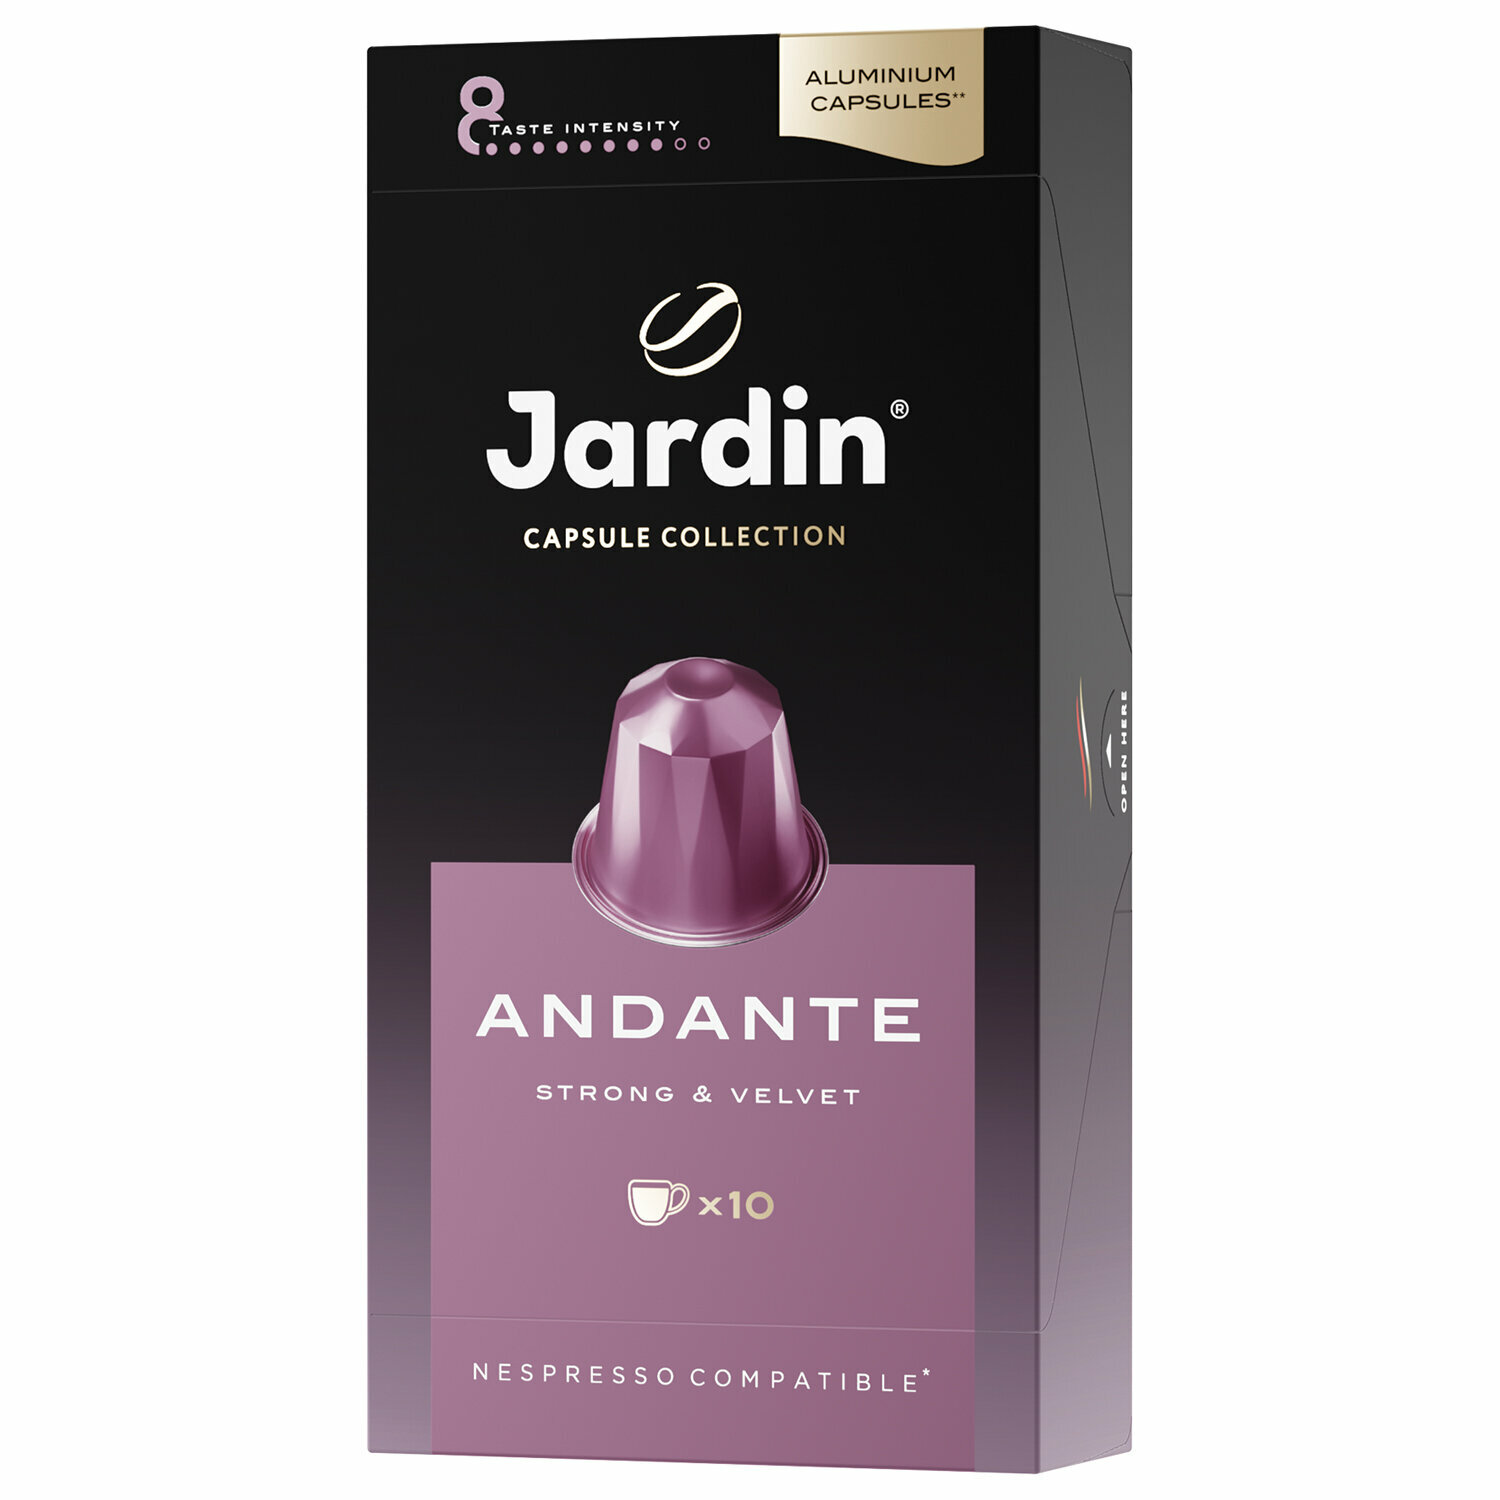 Кофе JARDIN 1353-10, комплект 2 упаковки по 10 порций